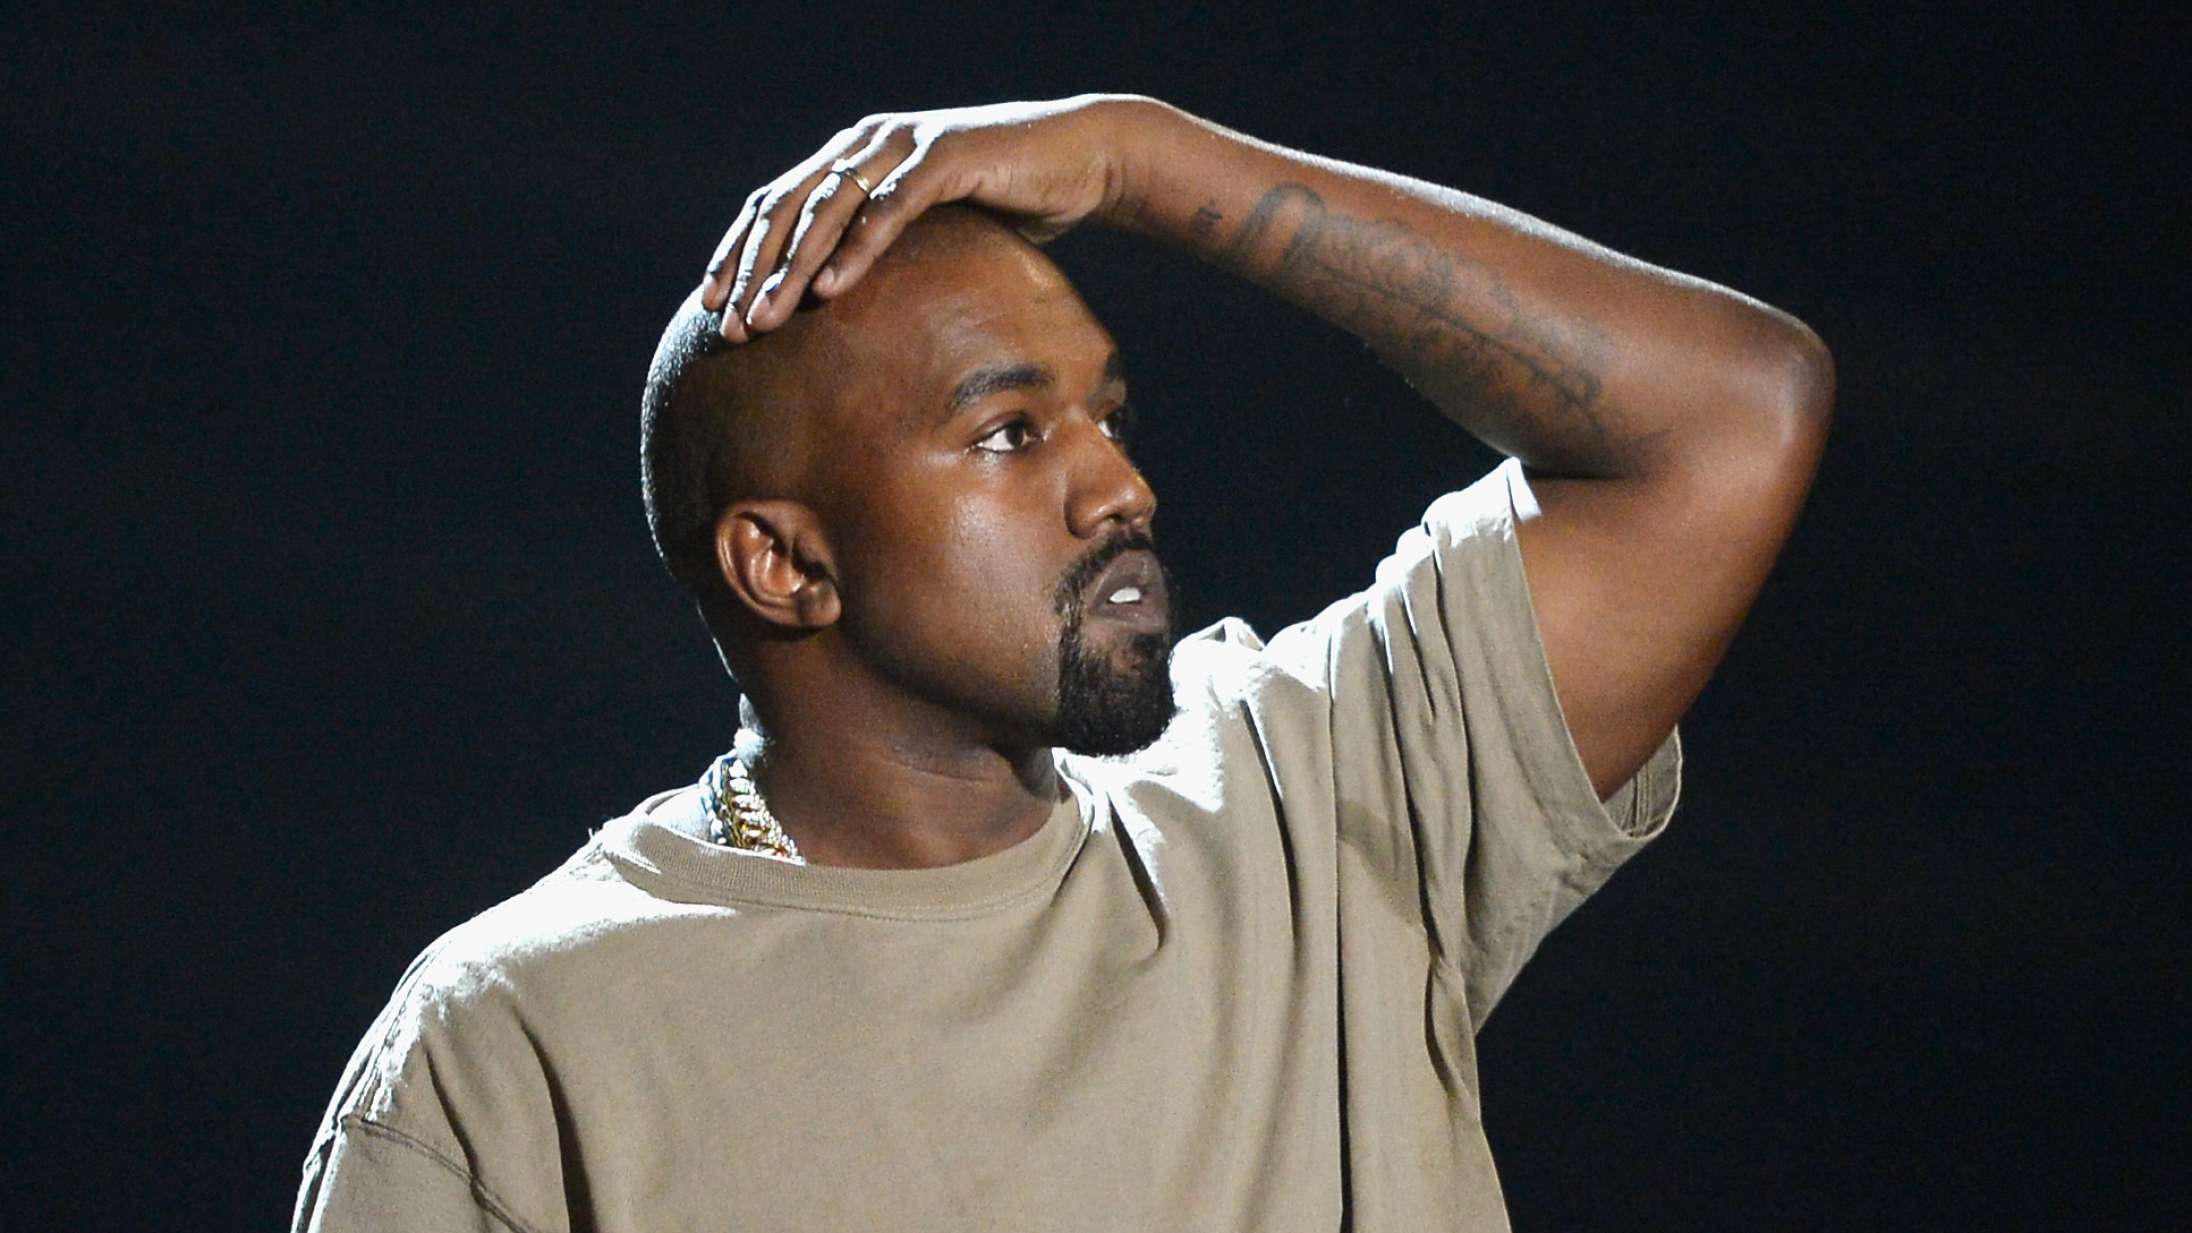 Nå, så Kanye West spiller festivaler i 2022?